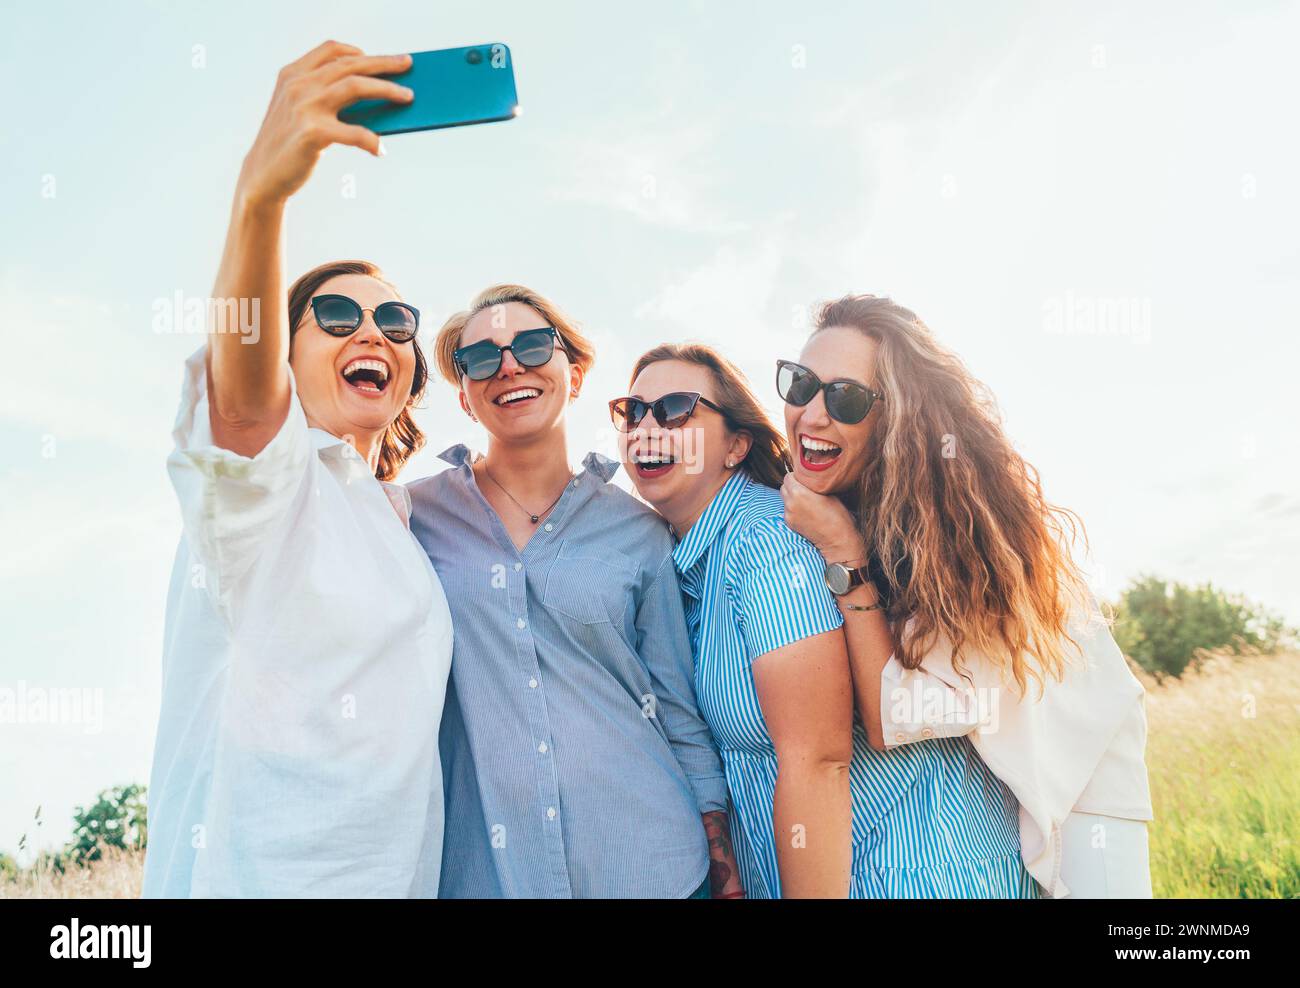 Portrait de quatre femmes souriantes et gaies dans des lunettes de soleil qui s'embrassent ensemble et font des photos de selfie à l'aide d'un smartphone moderne pendant la marche en extérieur. Femme Banque D'Images